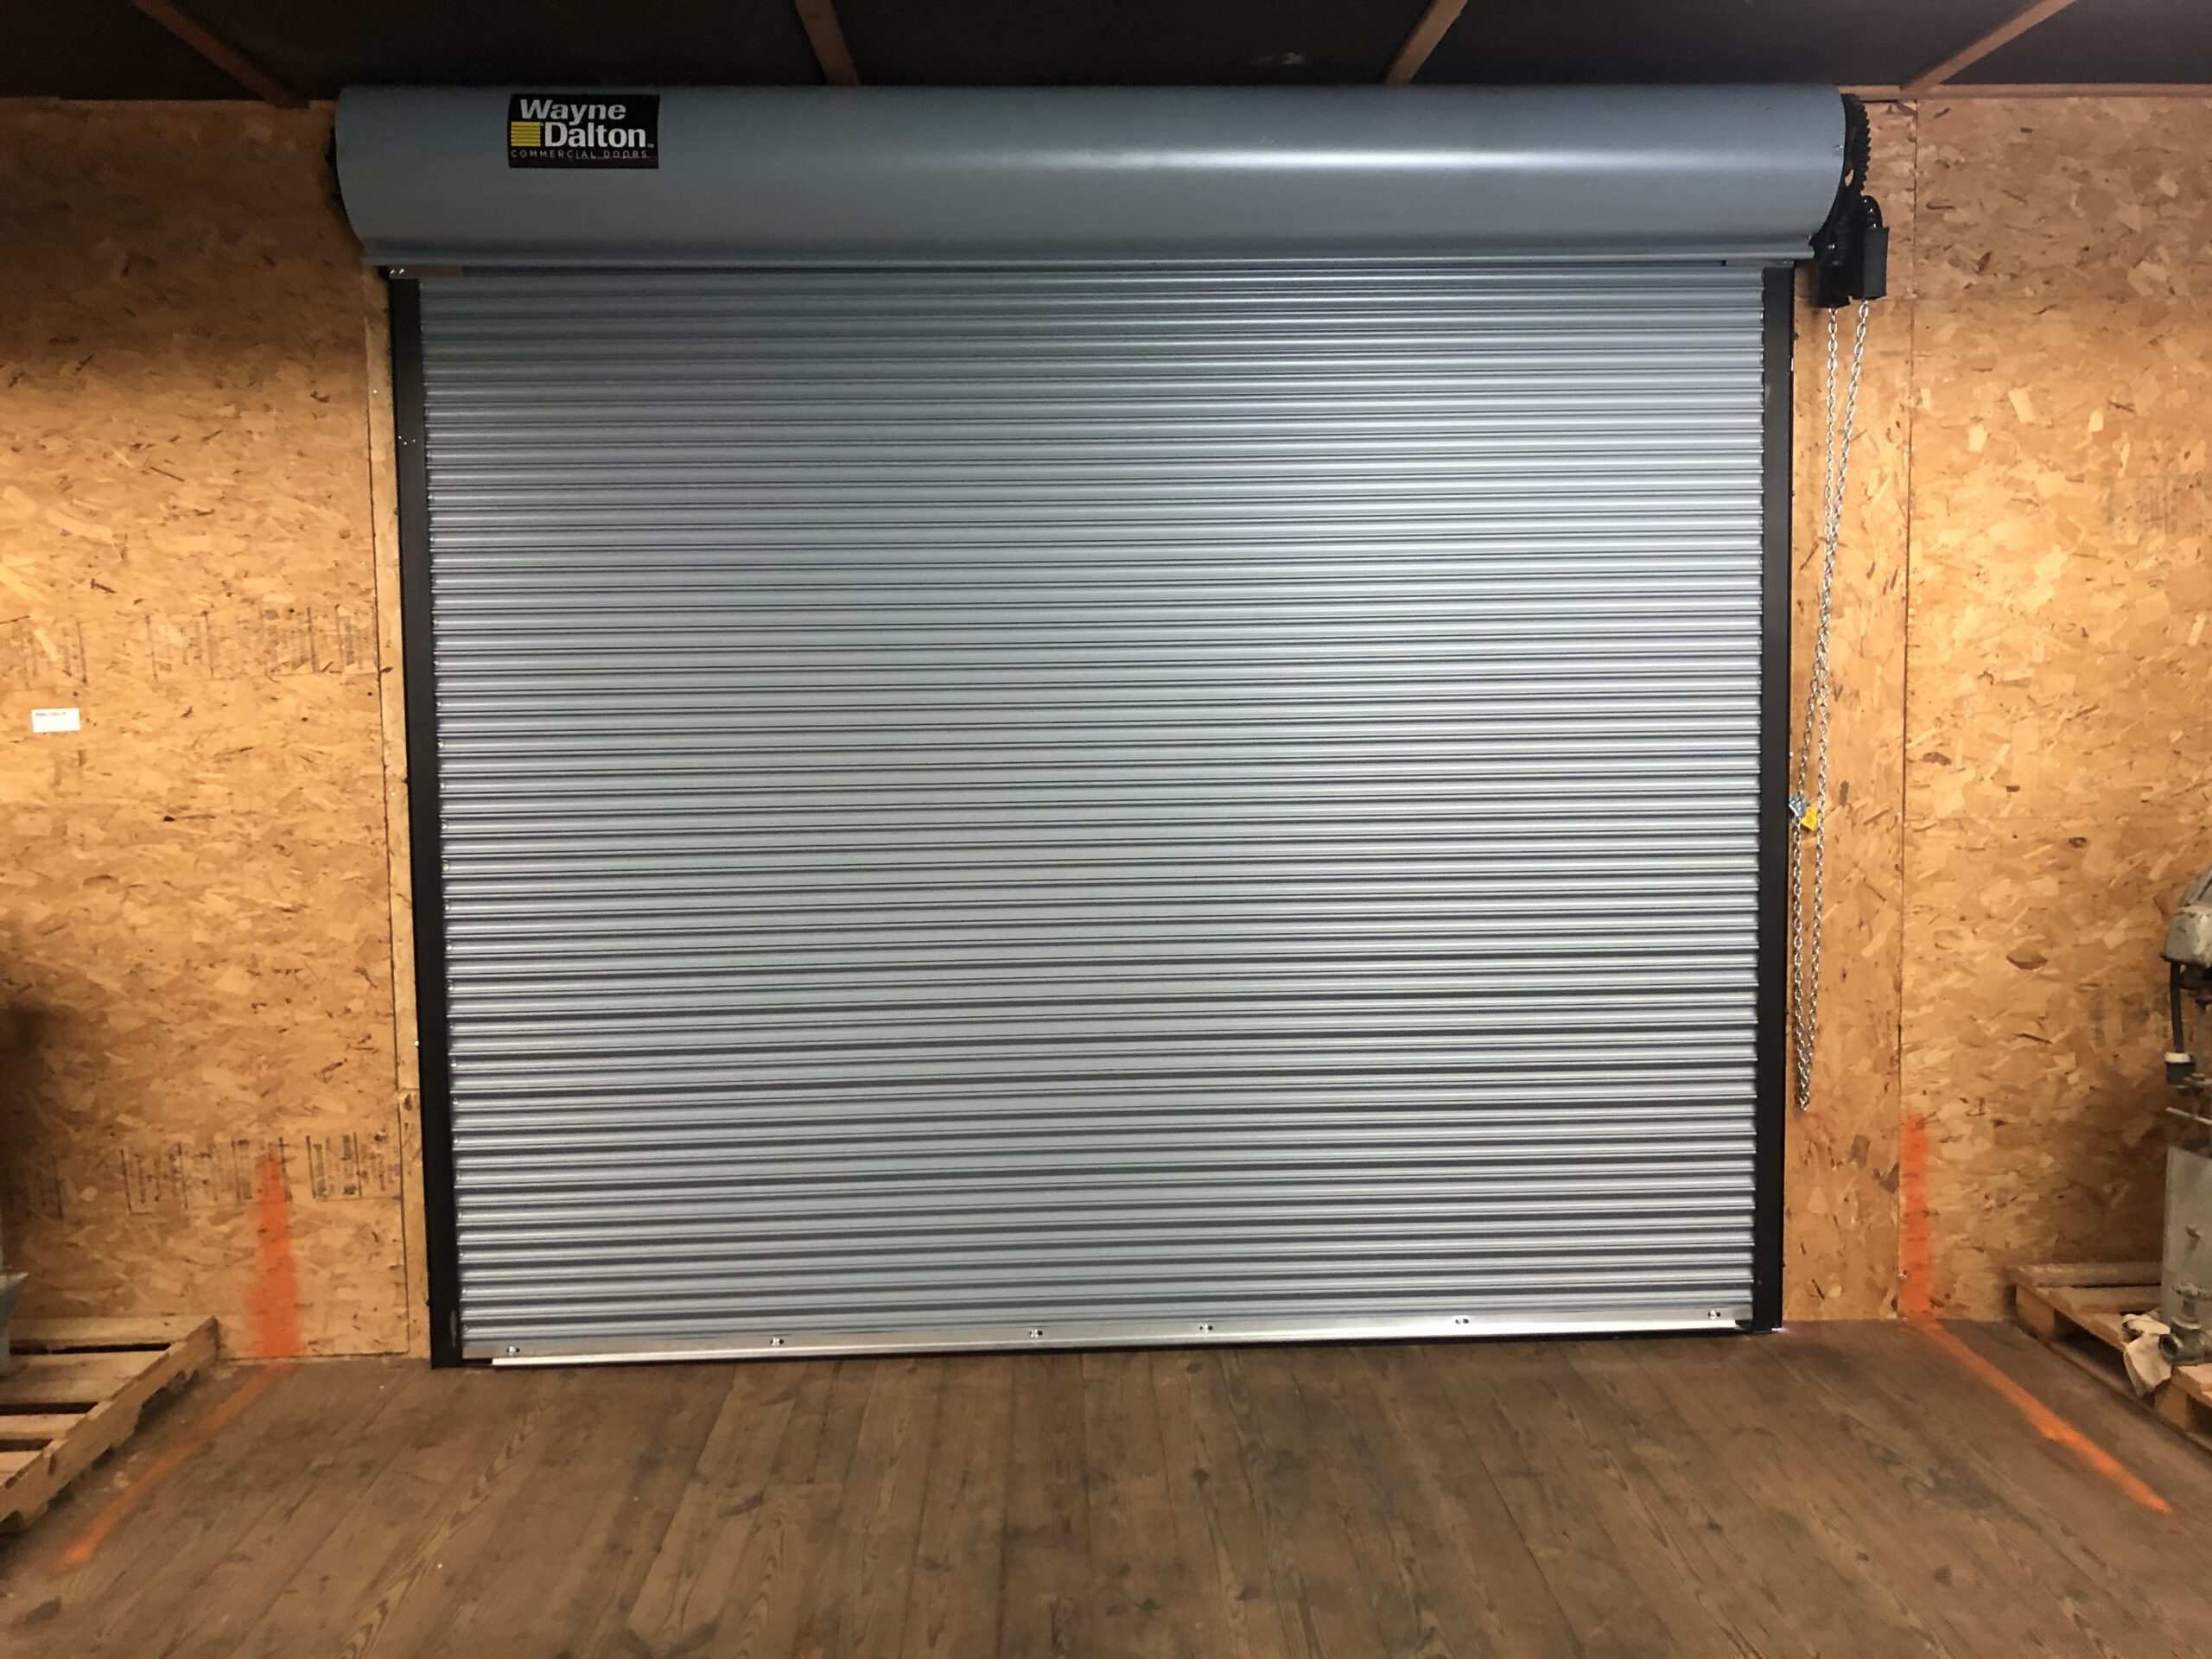 Volpe Door Commercial Roll Up Garage Door Services Schwenksville PA